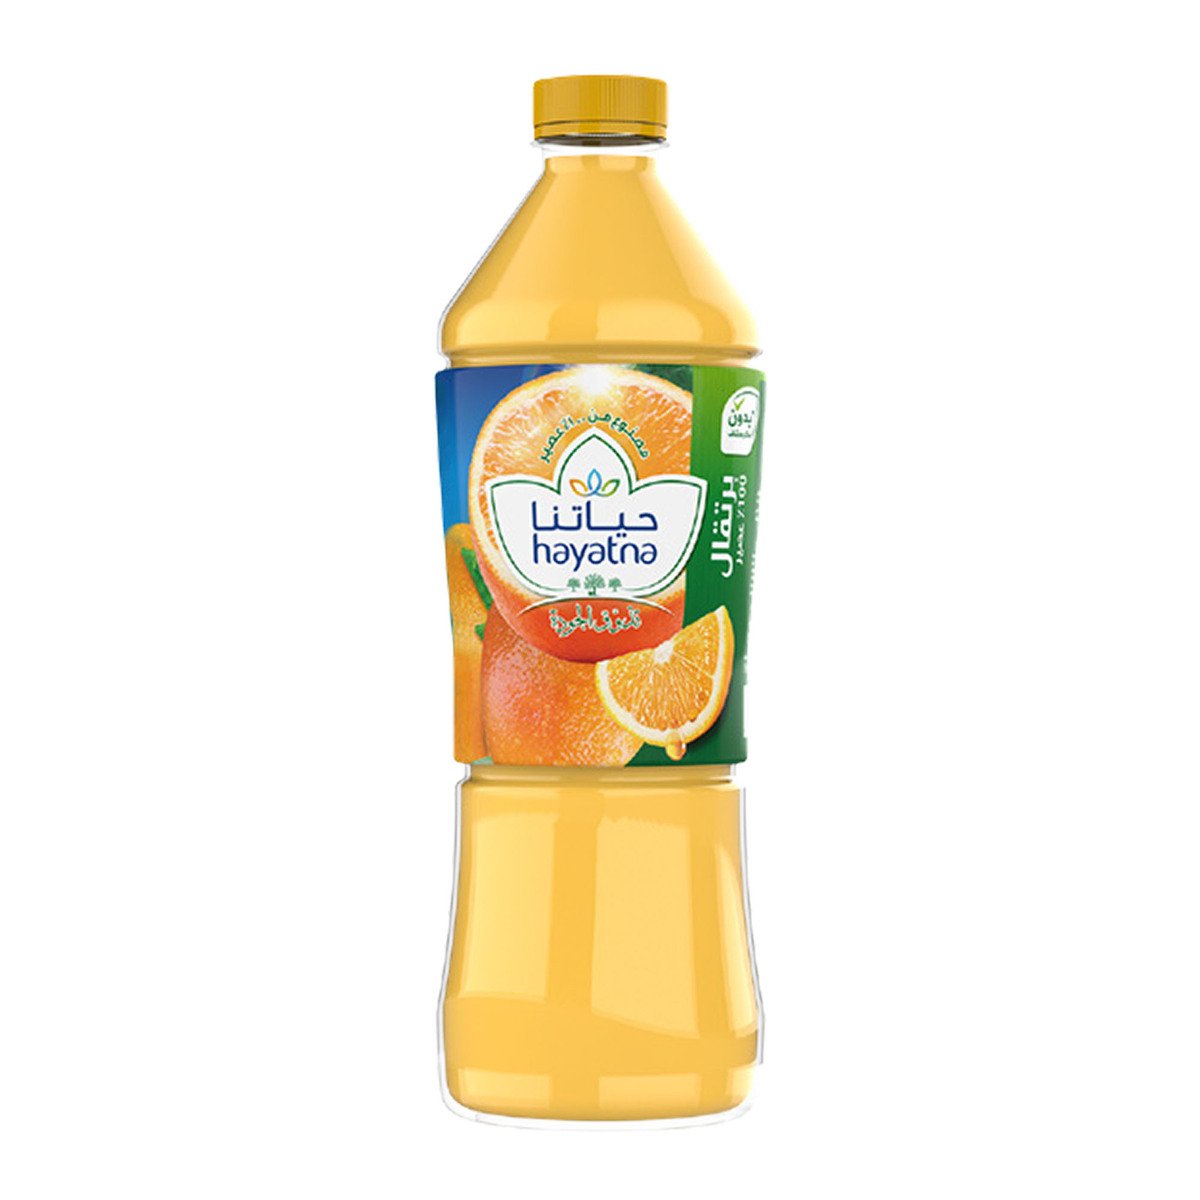 Hayatna Orange Juice 1.5 Litres